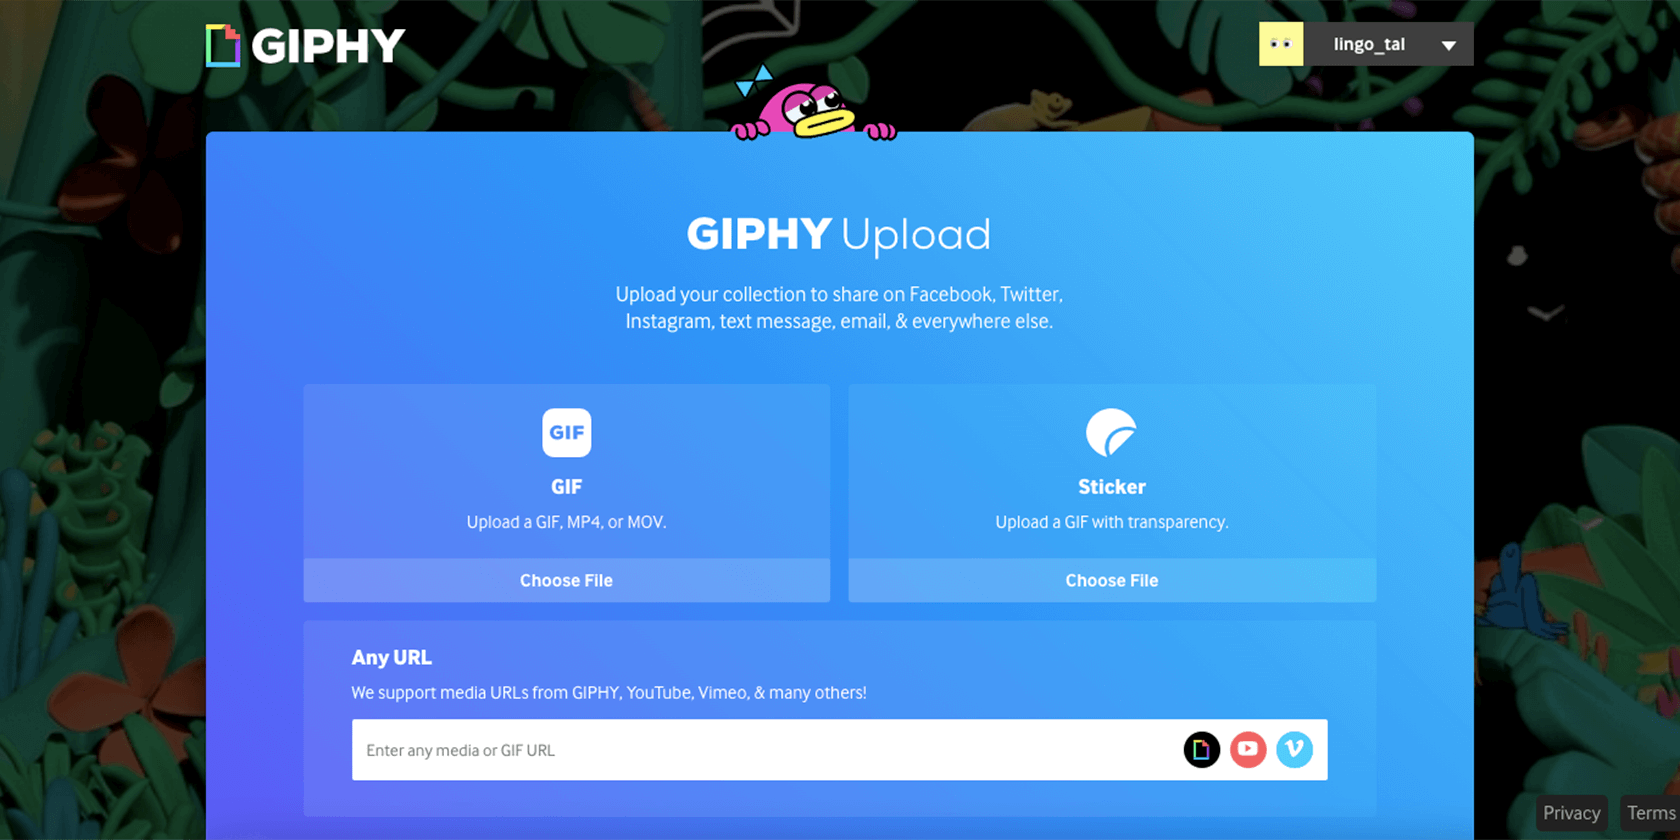 GIPHY upload - Come creare una GIF da un video: 2 metodi semplici